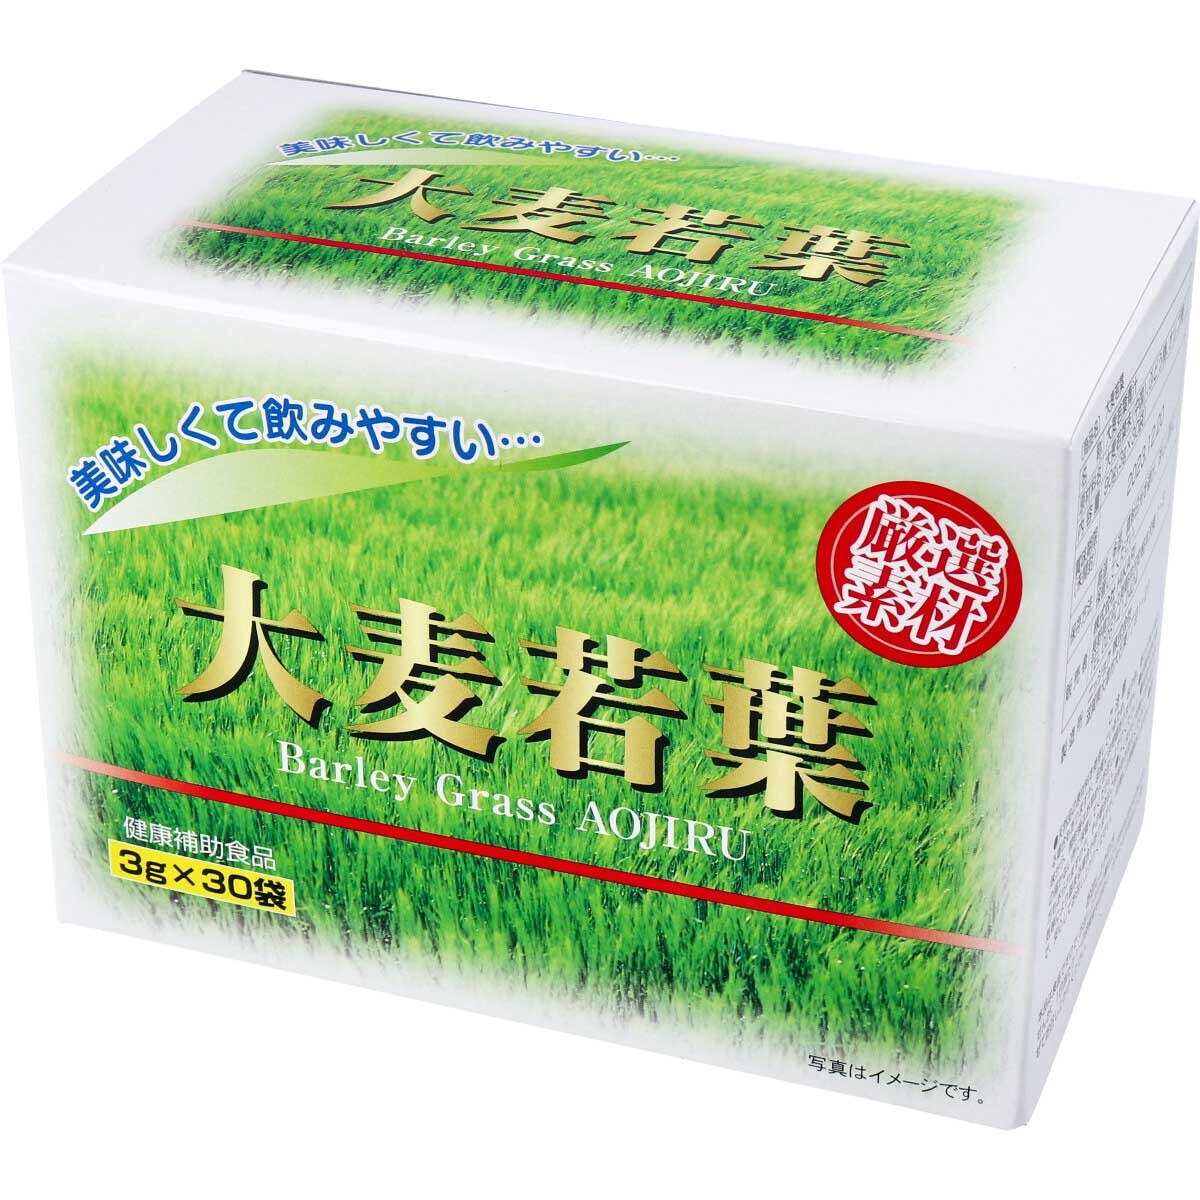 大麦若葉の青汁 3g×30包 ダイエット 